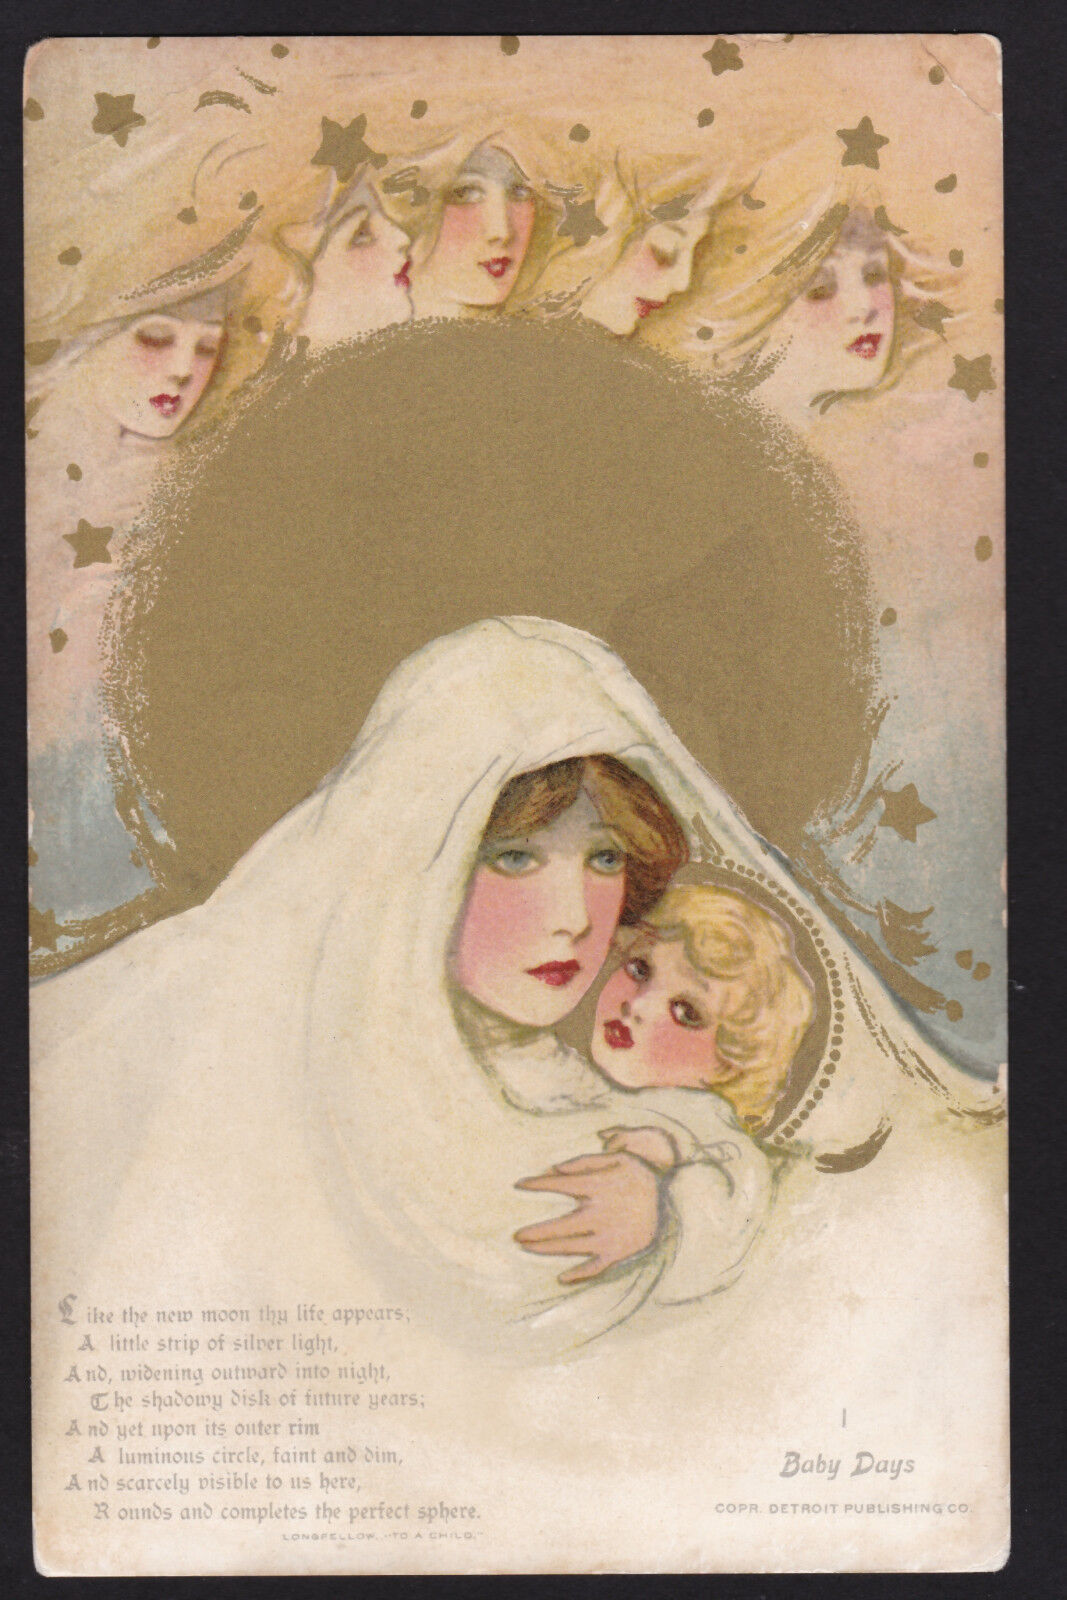 c1908 Schmucker Baby Days Mother & Child Childhood Days series postcard